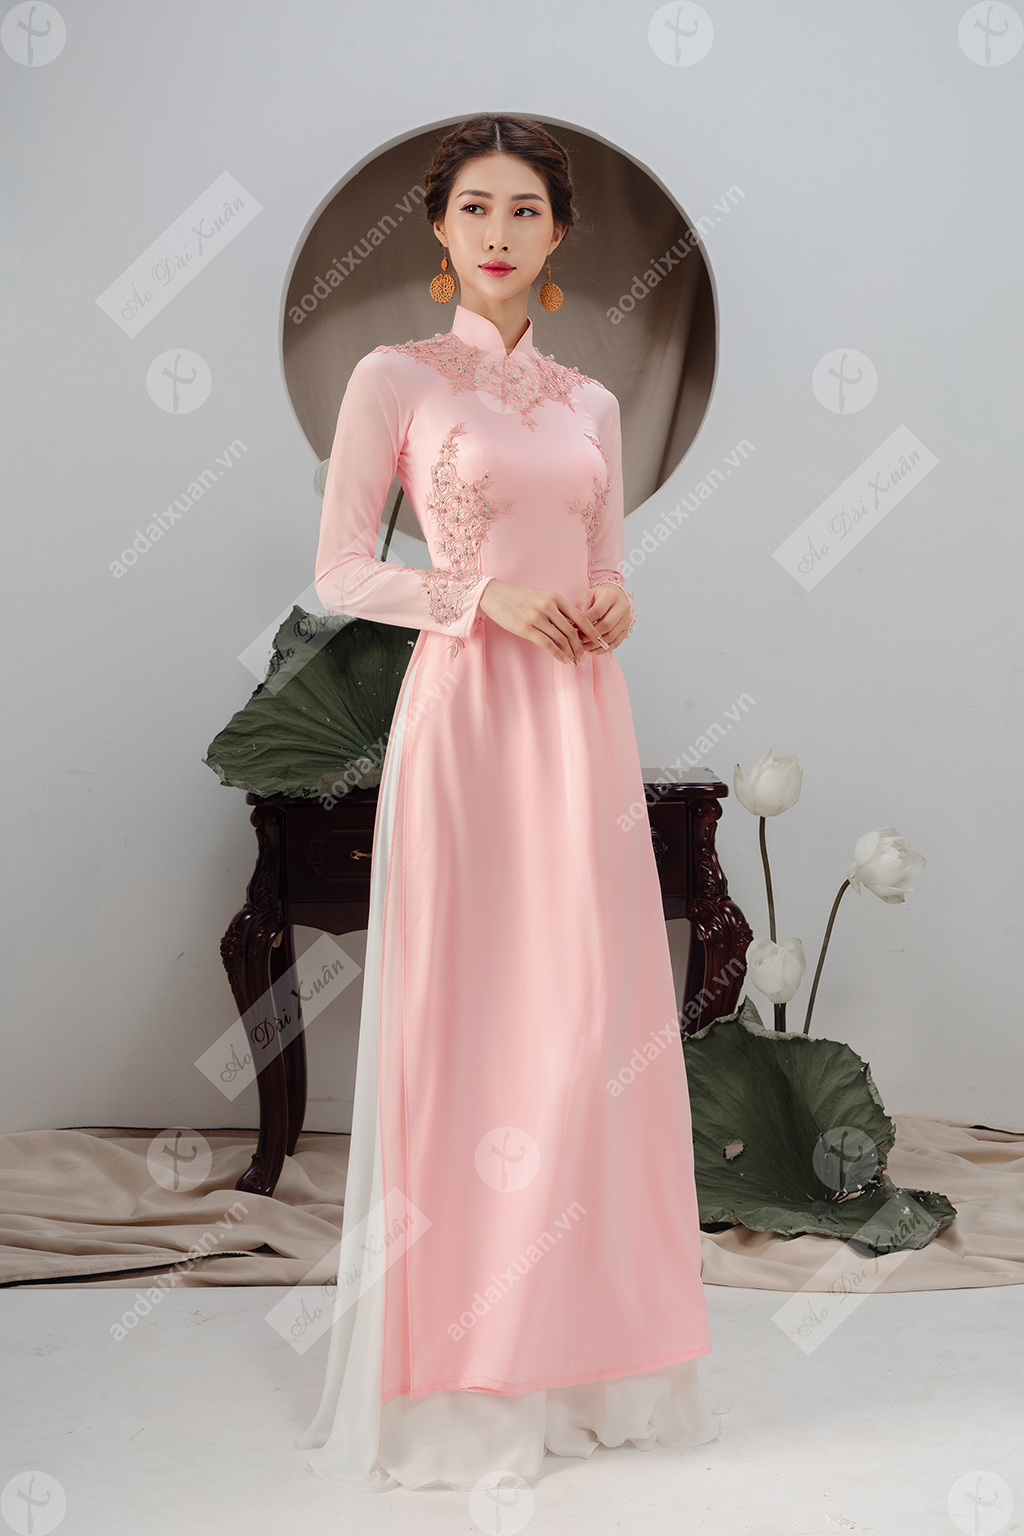 áo dài lụa hồng kết đá - 190301